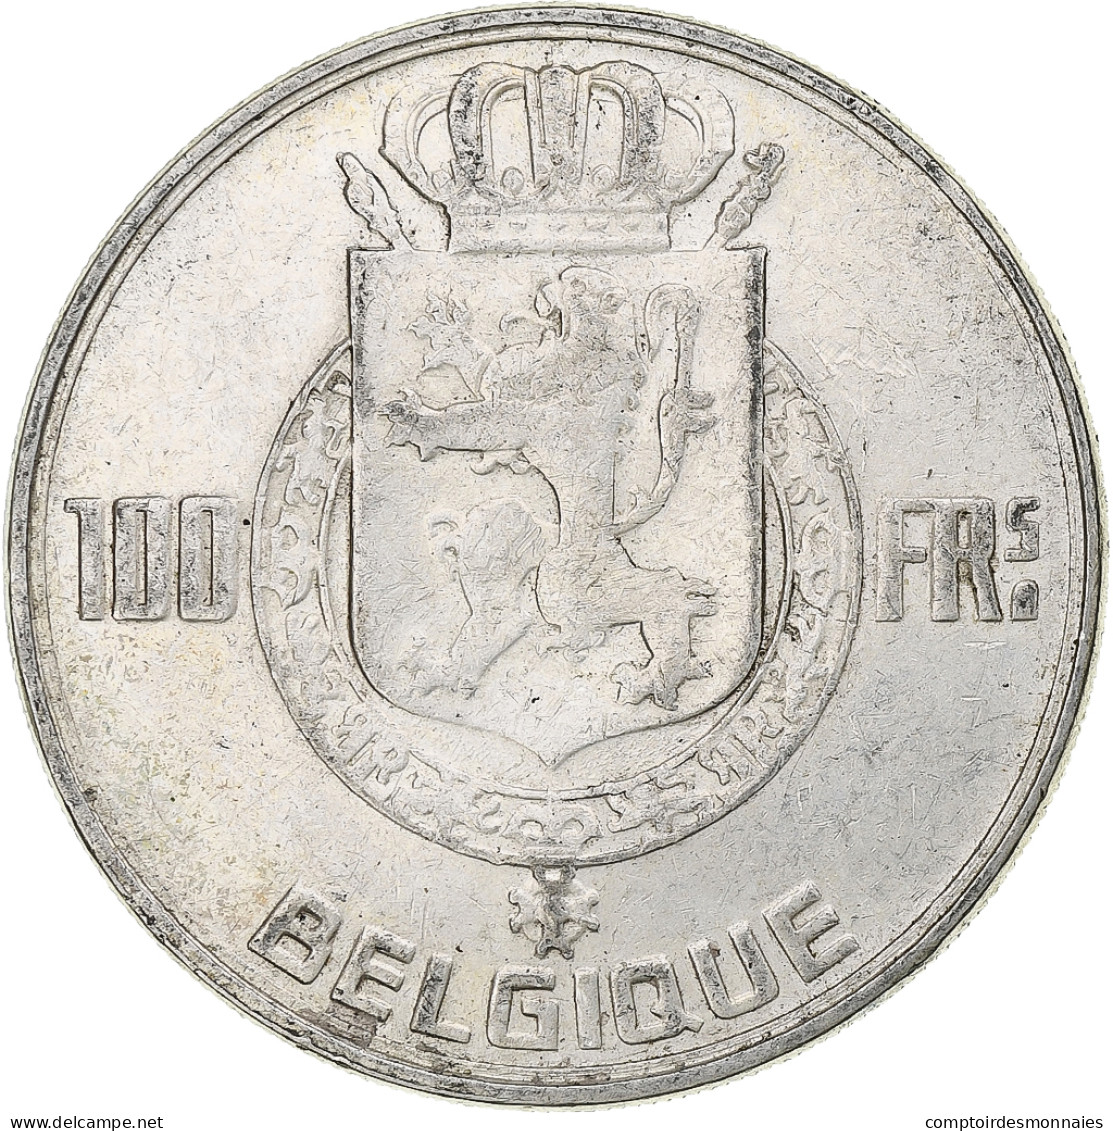 Belgique, Baudouin, 100 Francs, 1954, Bruxelles, Argent, TTB+, KM:138 - 100 Francs